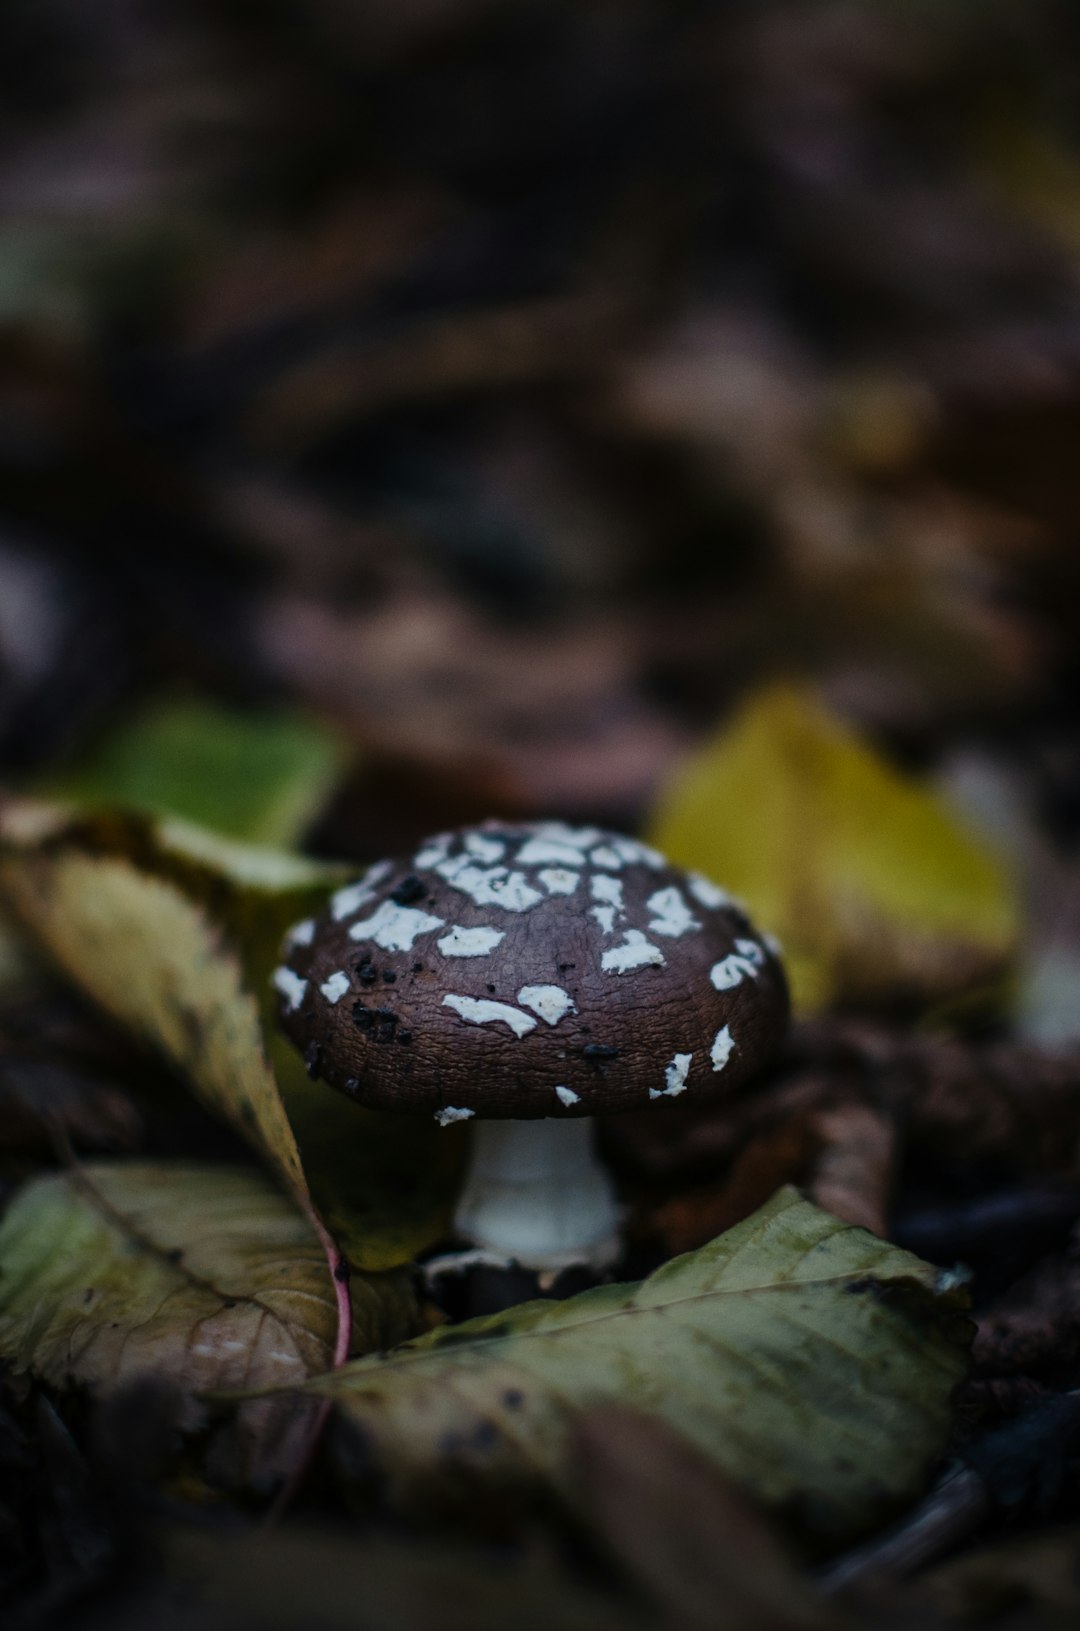 white and black mushroom in tilt shift lens